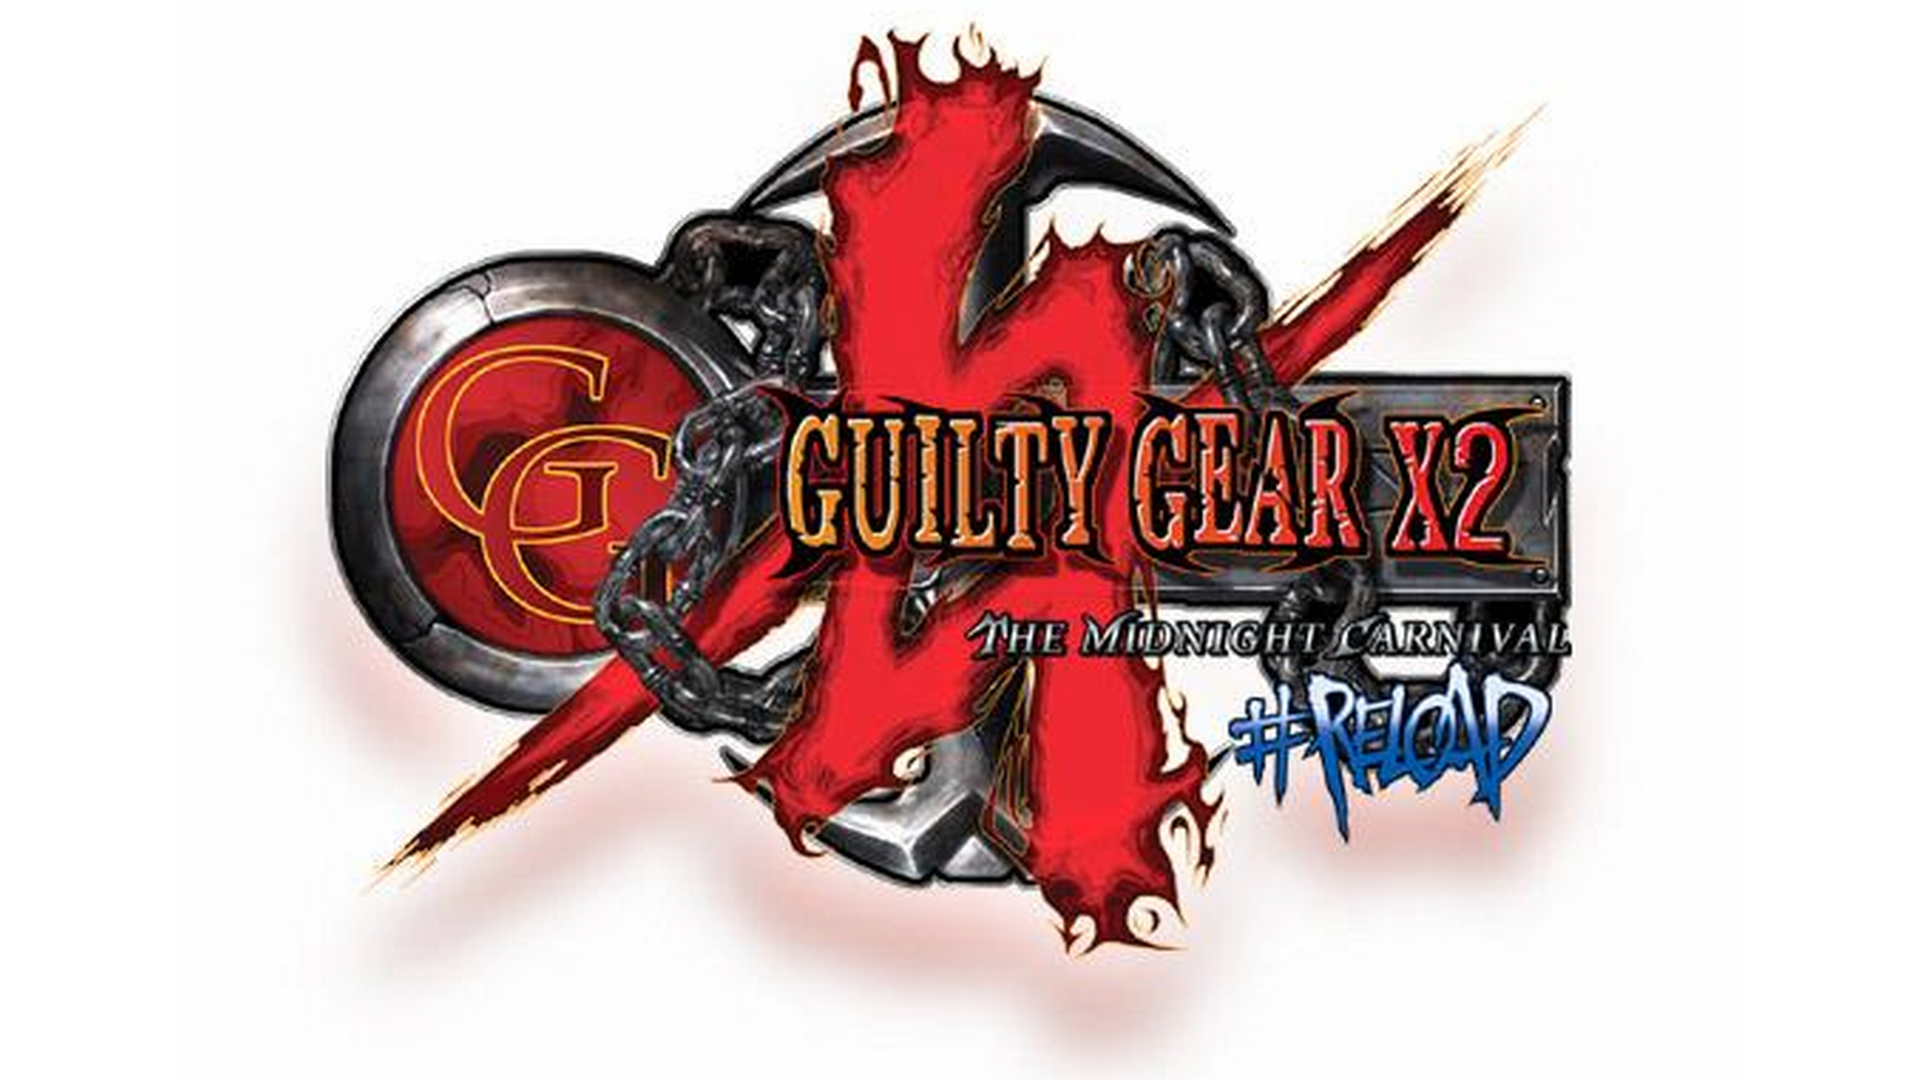 Guilty Gear X2 #Reload Logo